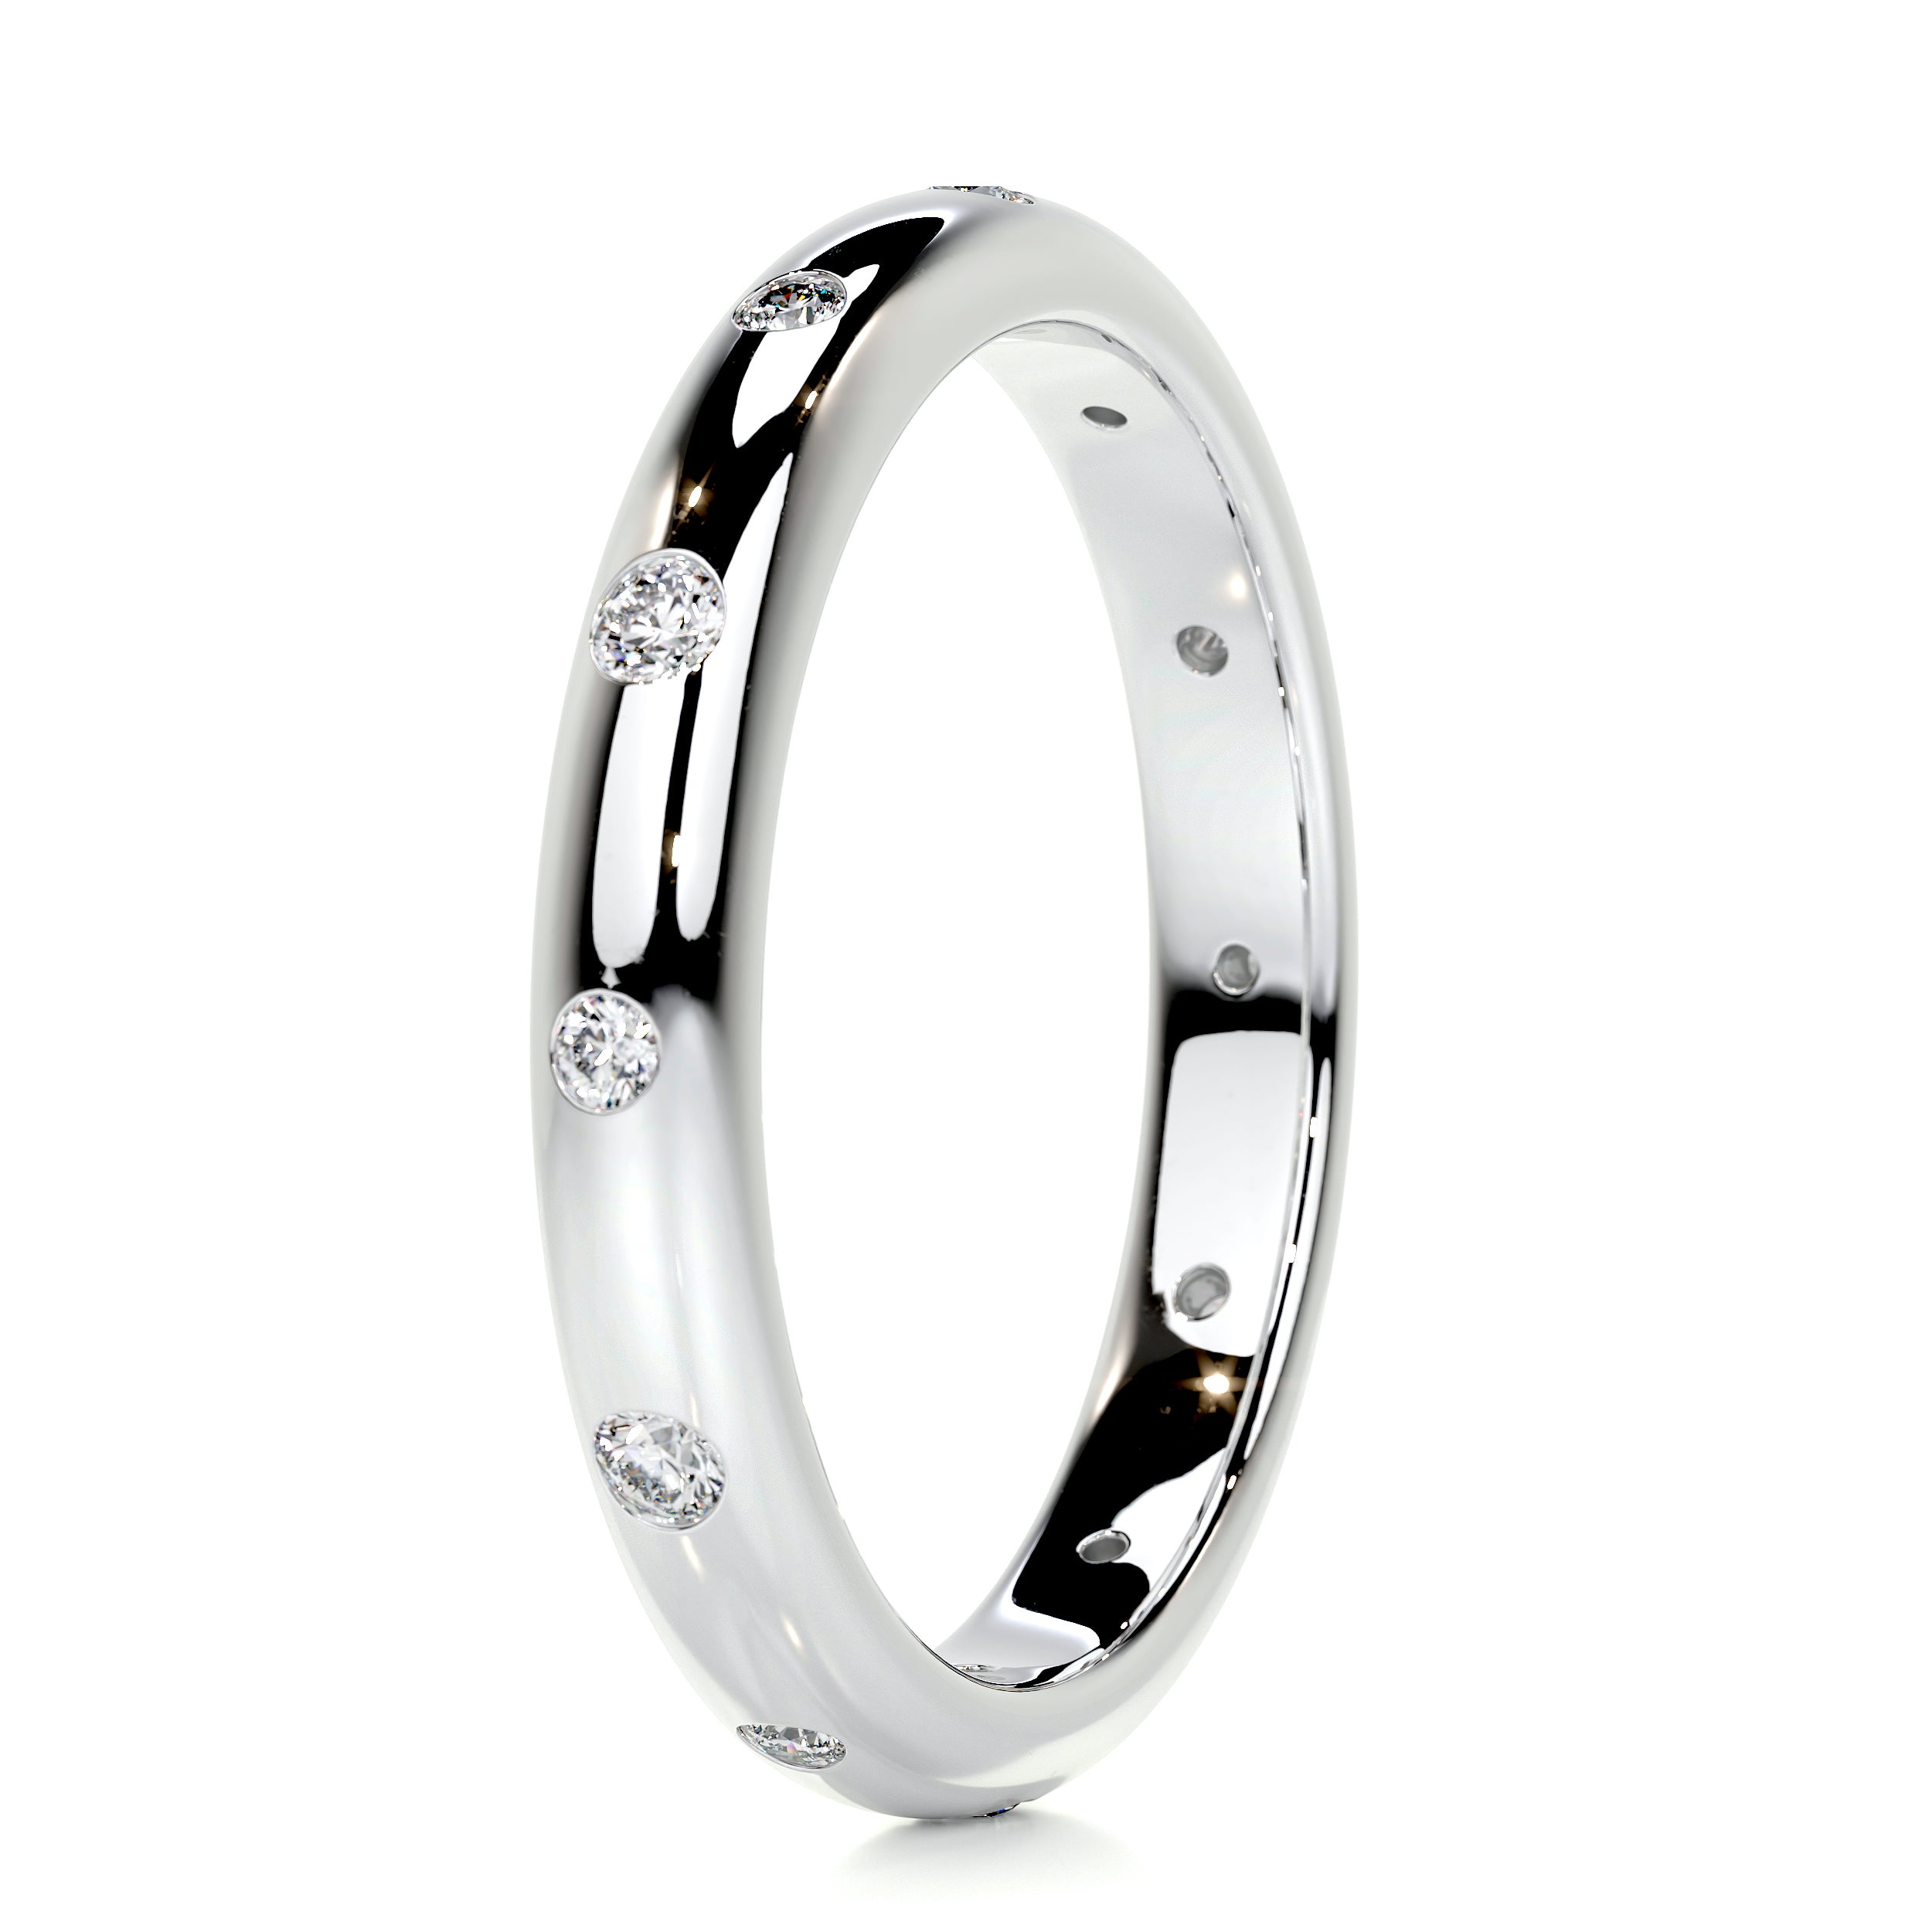 Zara Diamond Wedding Ring   (0.18 Carat) -18K White Gold